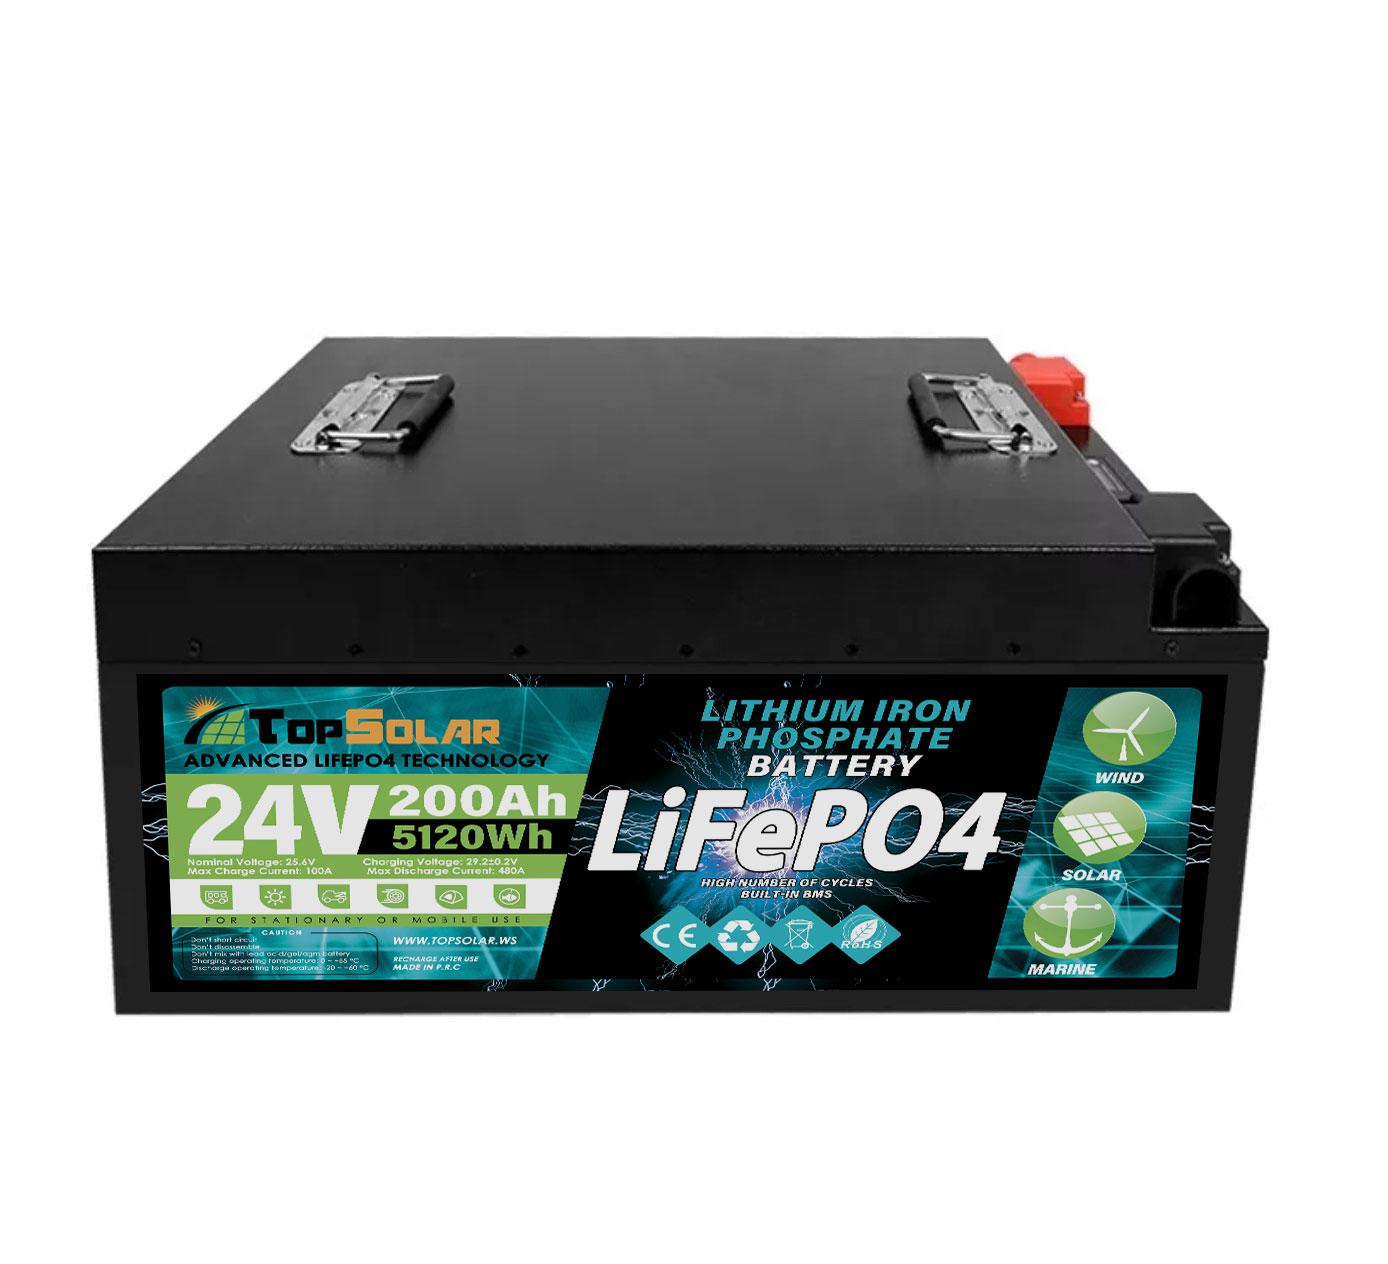 24v lifepo4 battery, lifepo4 24v, lifepo4 24v 100ah, travel trailer battery